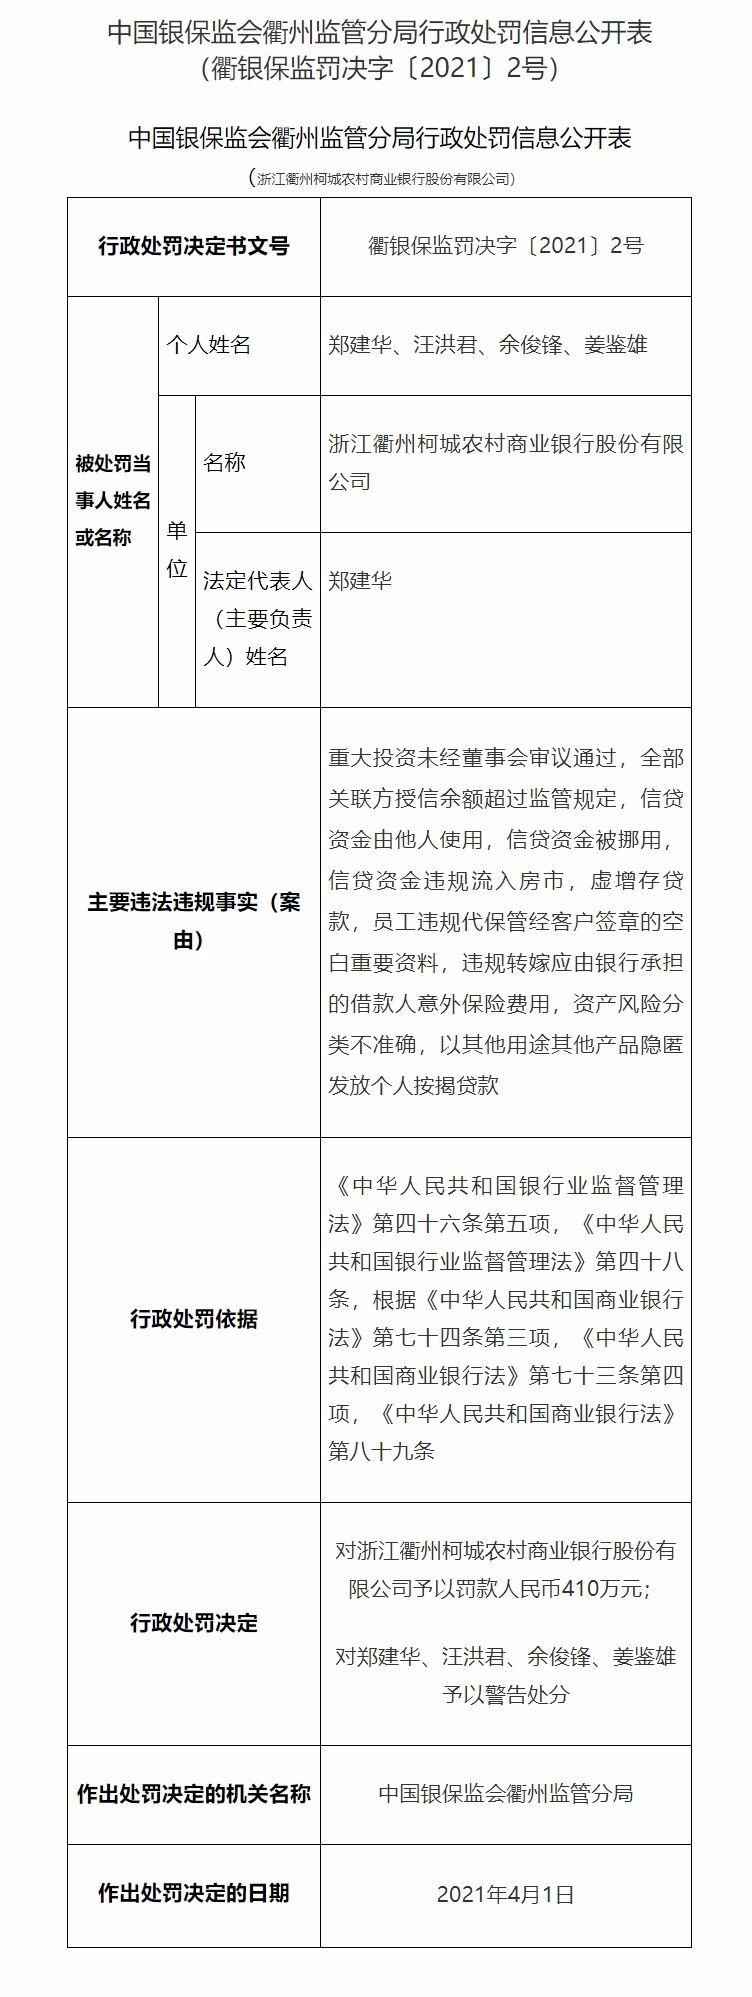 浙江衢州柯城农商行董事长被警告 因信贷资金由他人使用等被罚410万 